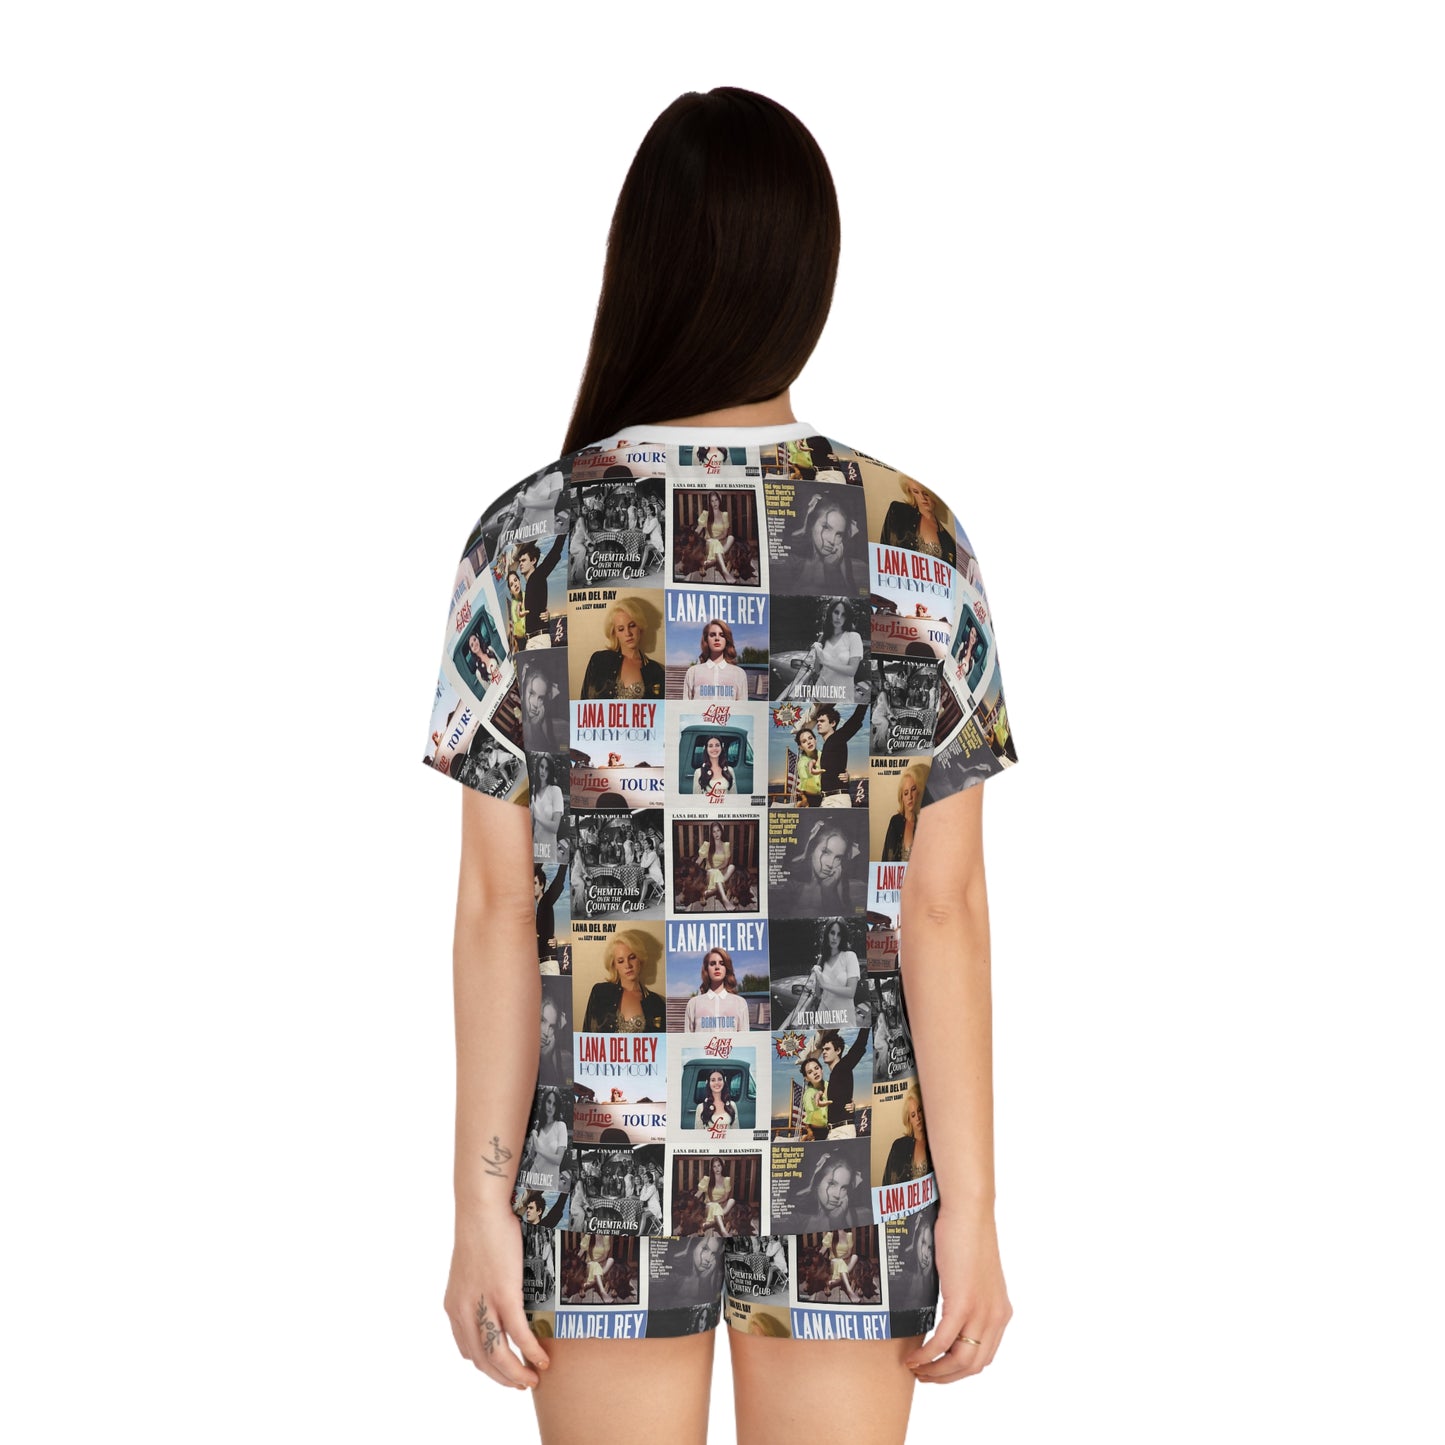 Lana Del Rey Album Cover Collage Women's Short Pajama Set